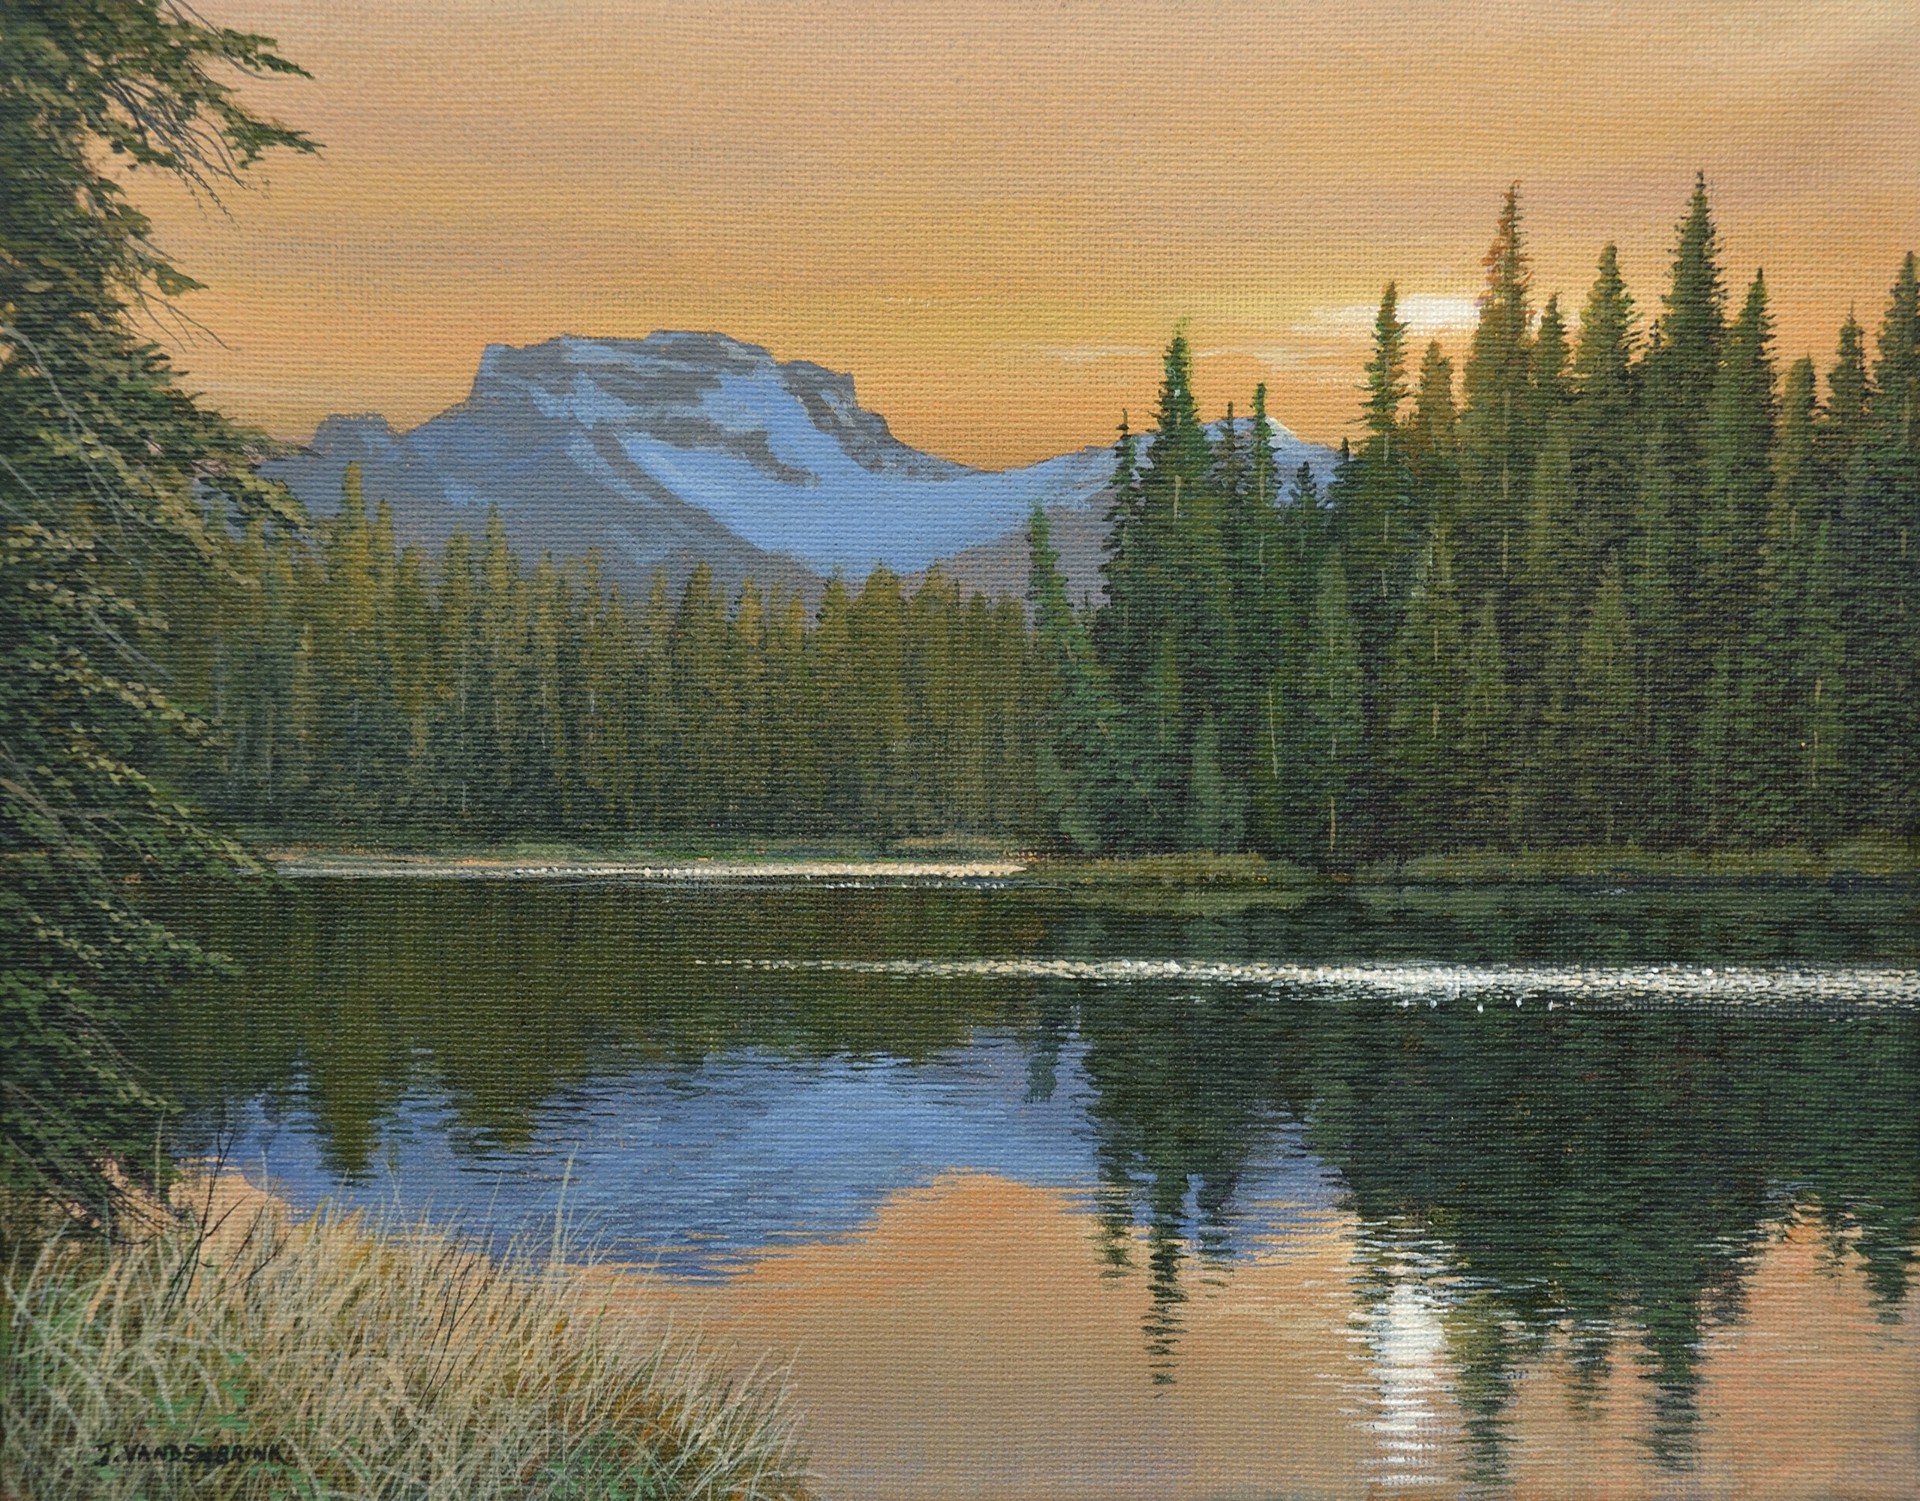 Bow River Sunset (Banff) by Jake Vandenbrink